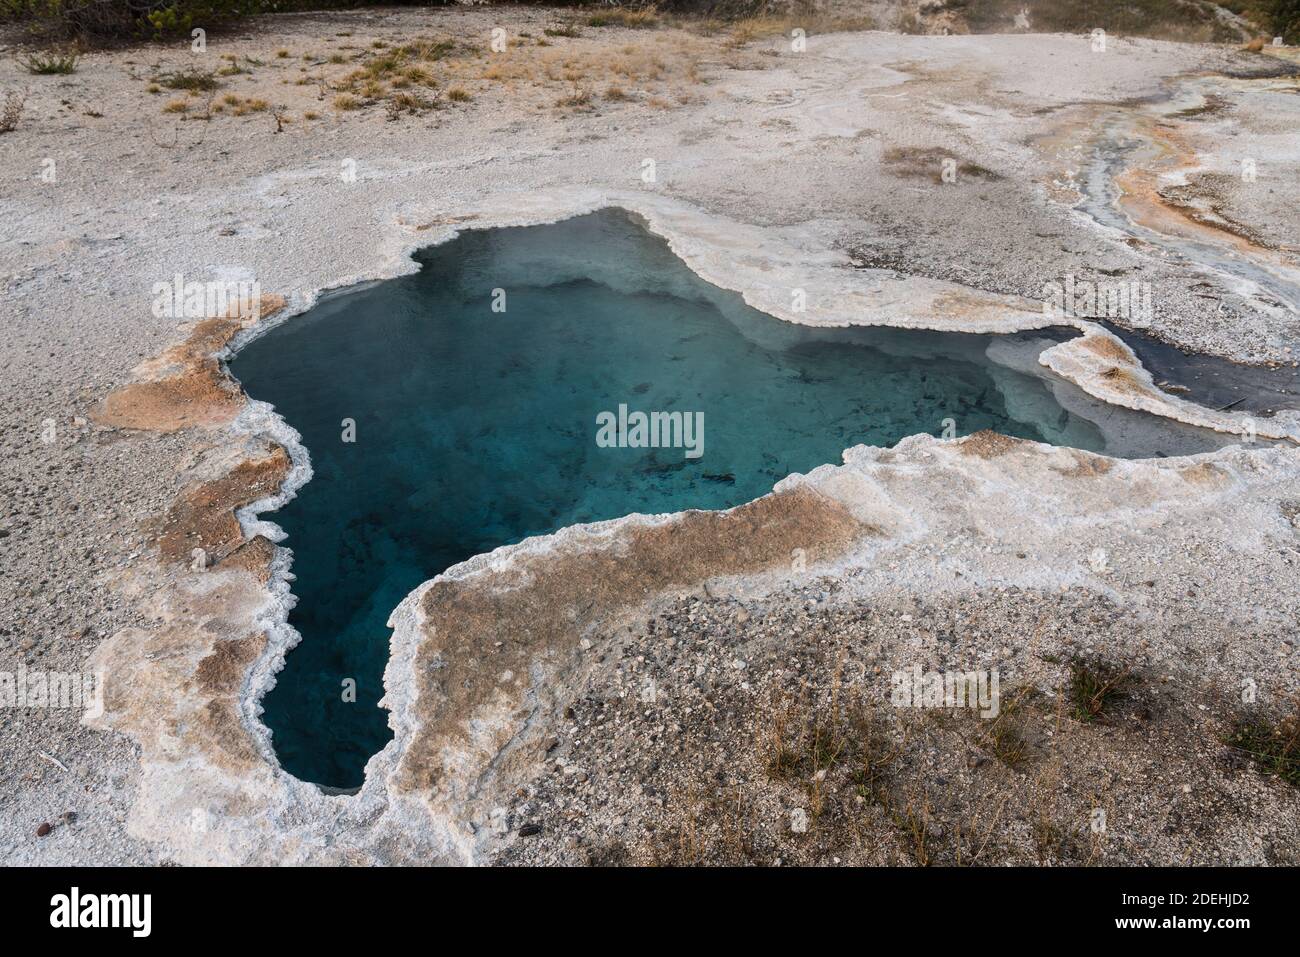 Le Blue Star Spring est une source chaude calme de clearwater dans le bassin supérieur de Geyser du parc national de Yellowstone dans le Wyoming, États-Unis. Banque D'Images